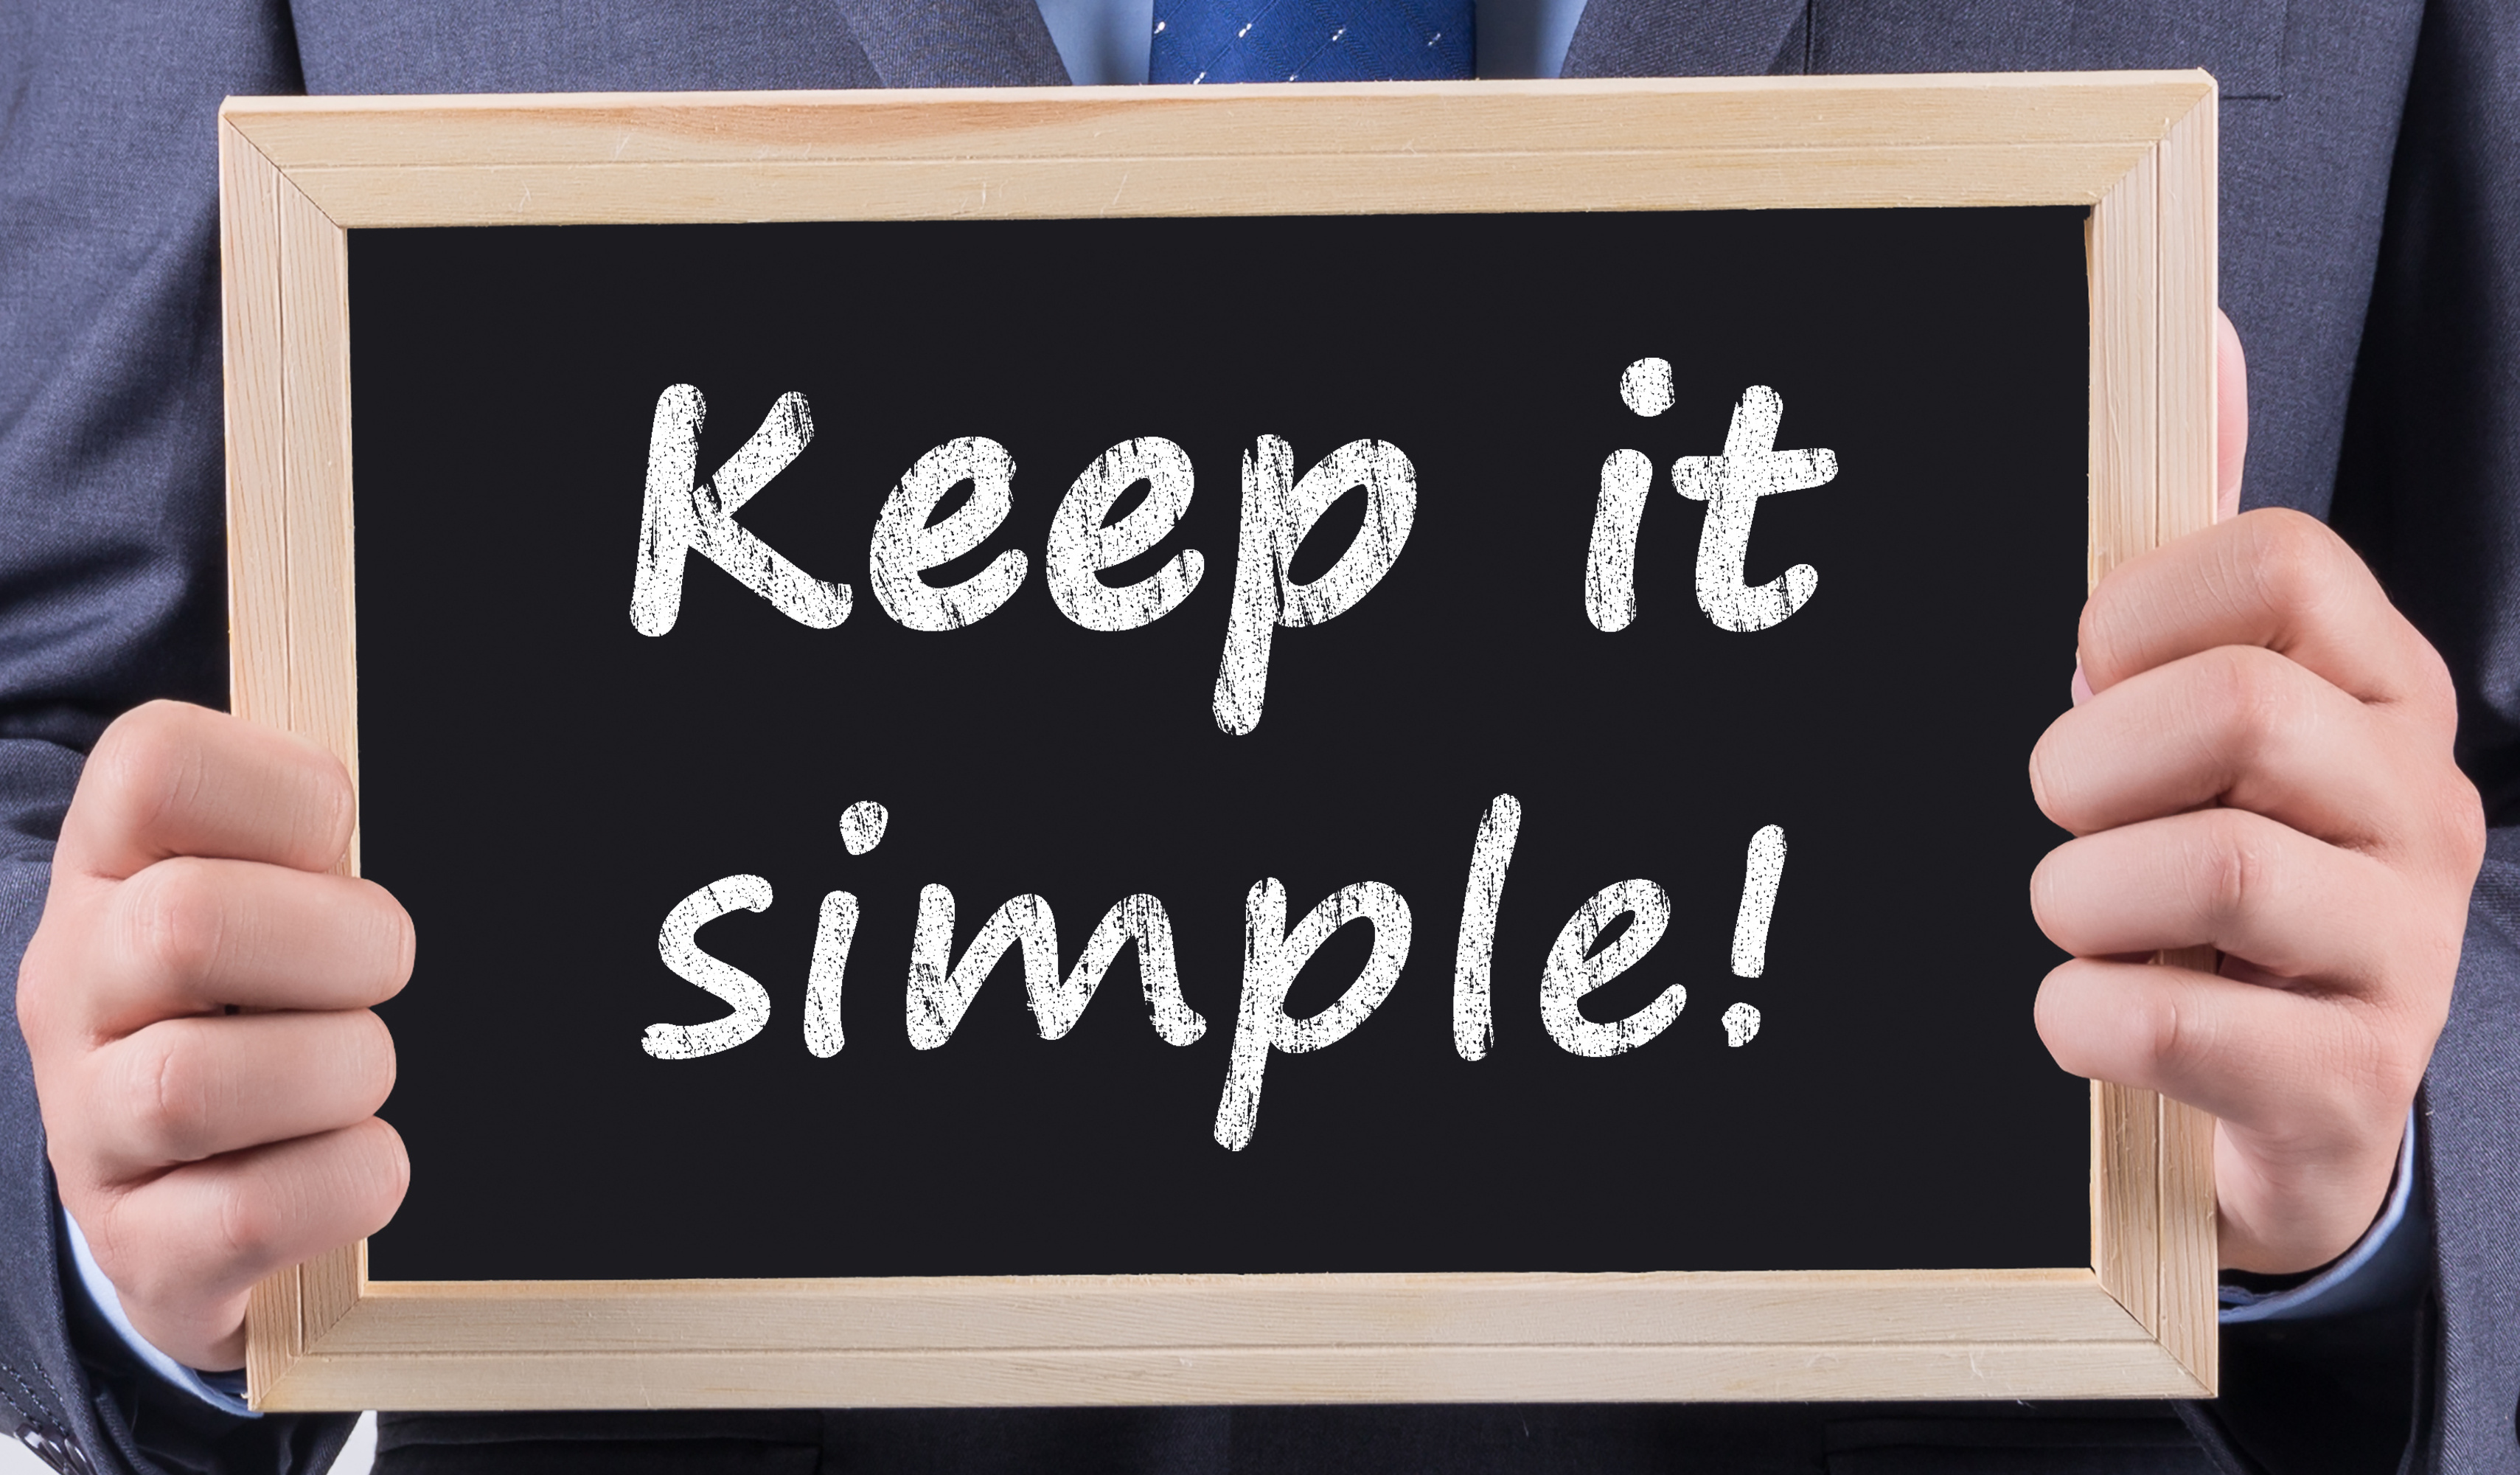 keep-it-simple